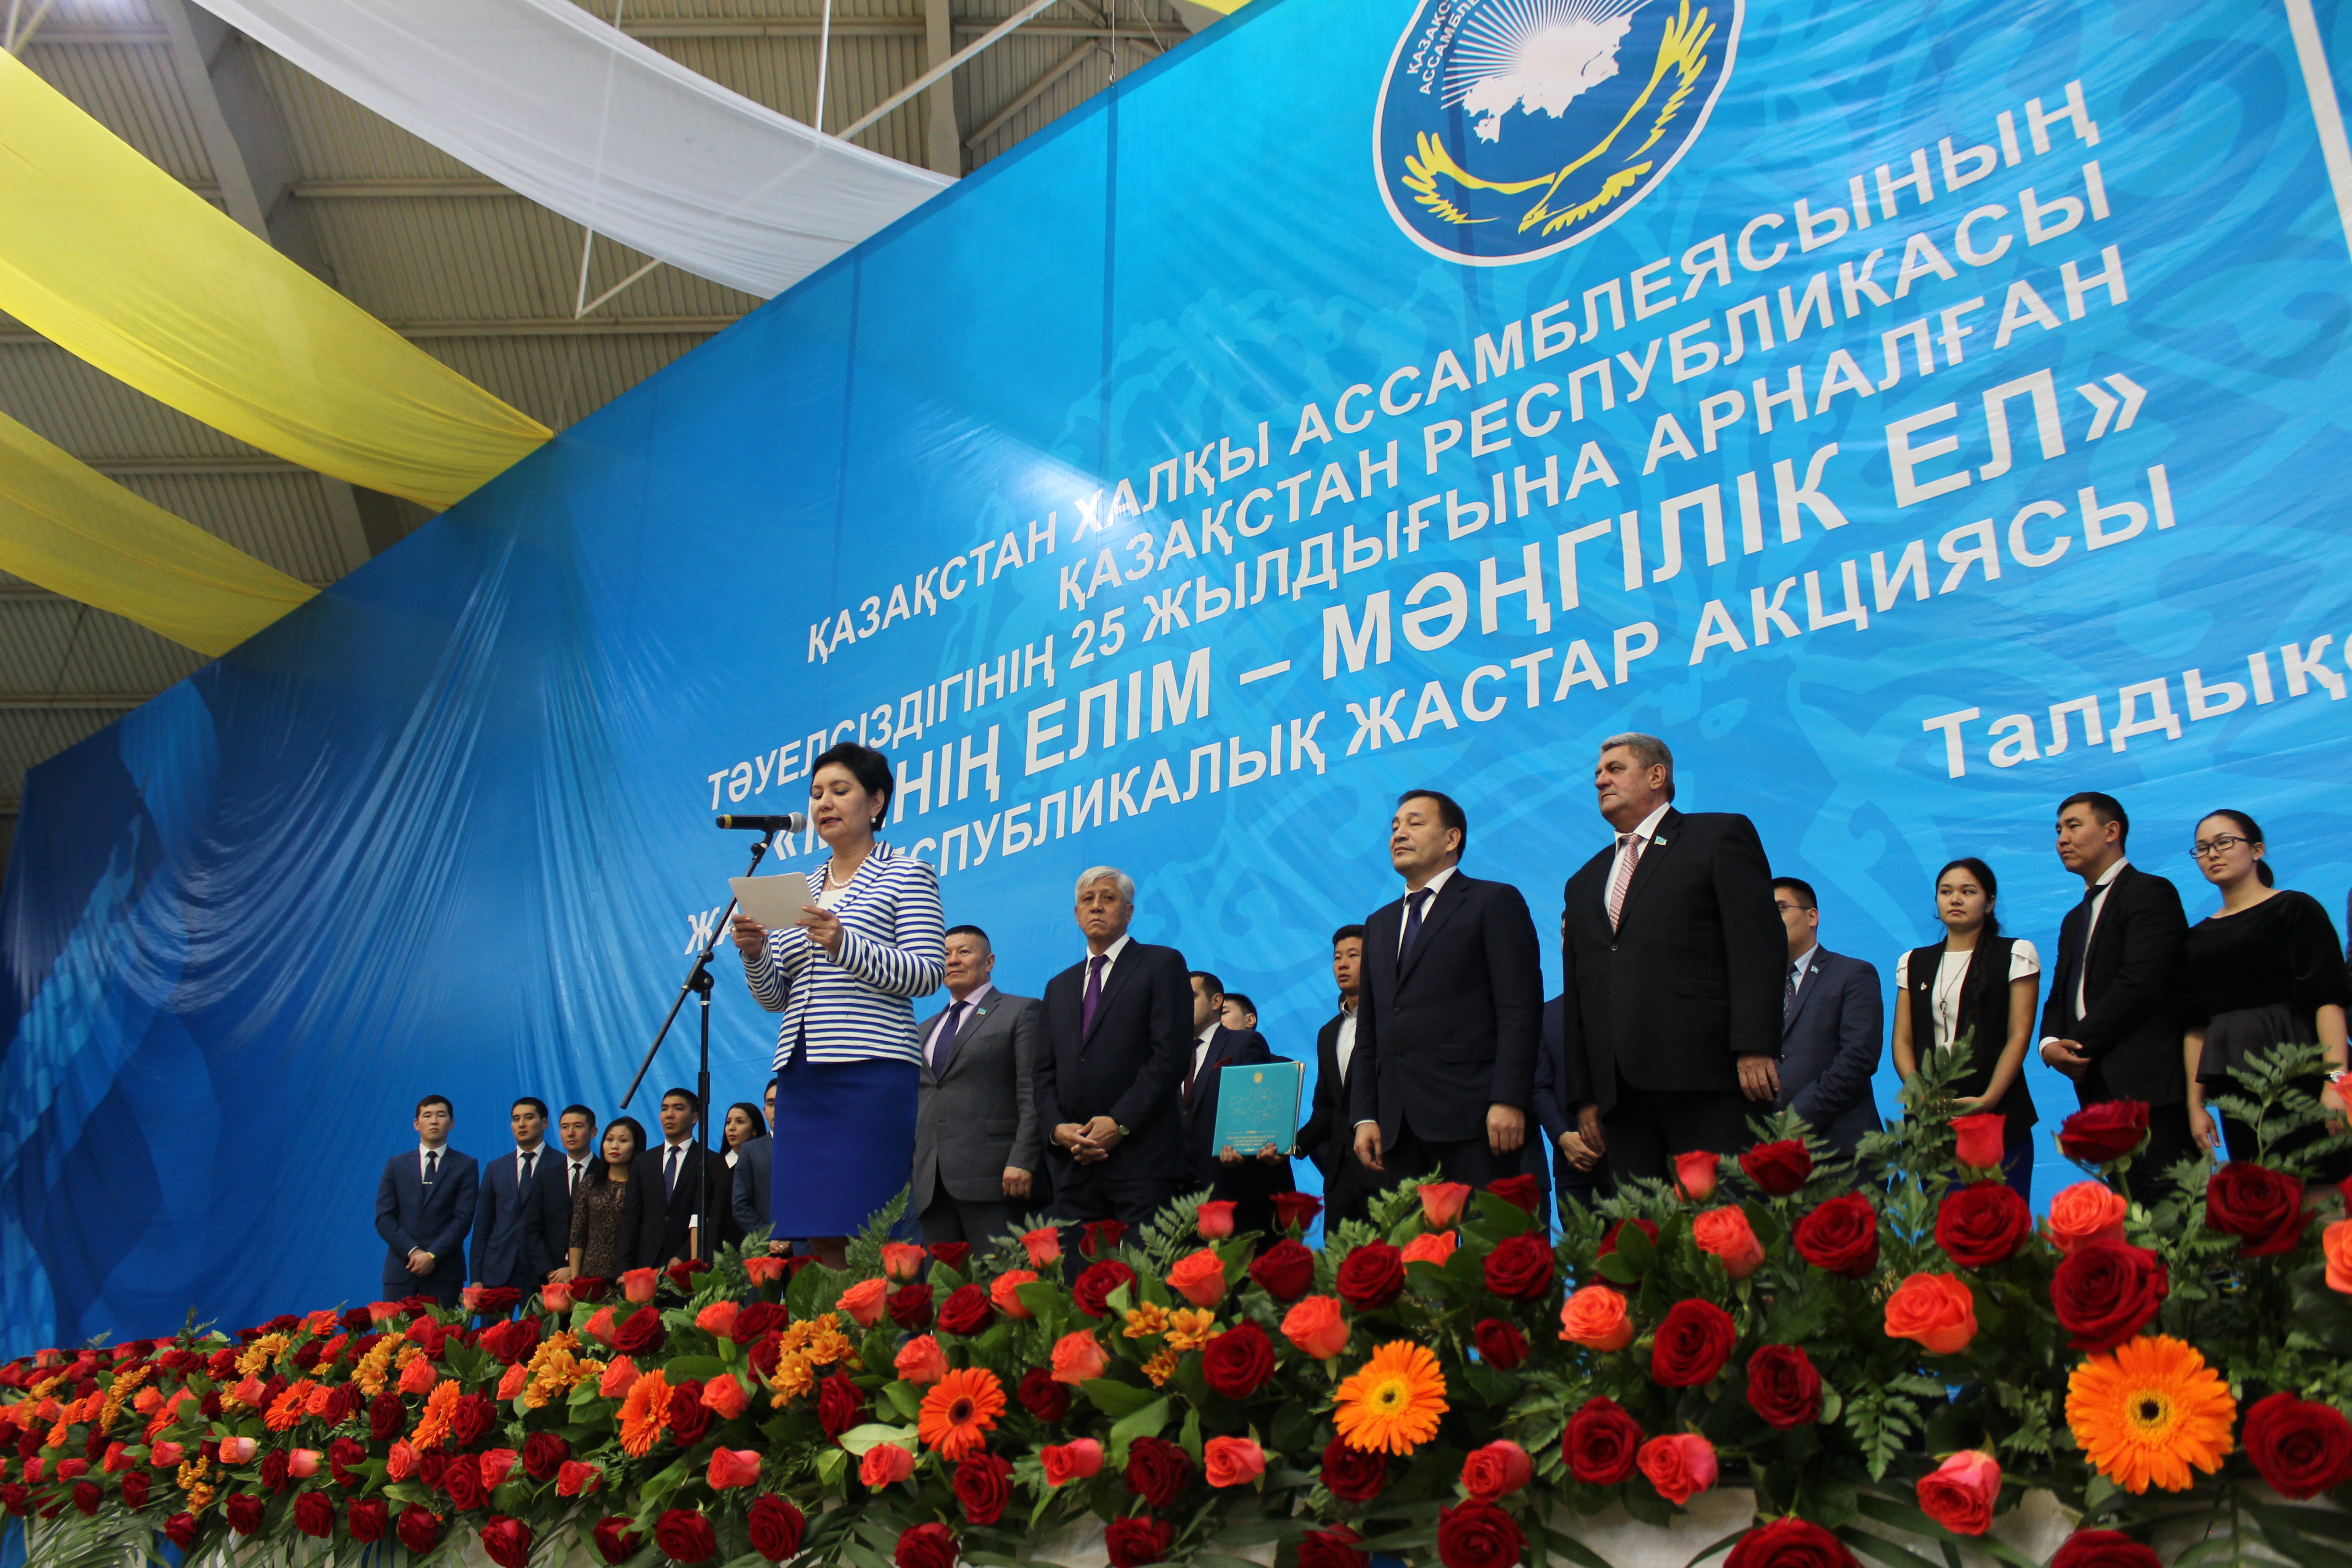 в Алматинской области прошел Республиканский форум Советов общественного согласия Ассамблеи народа Казахстана Алматинской области